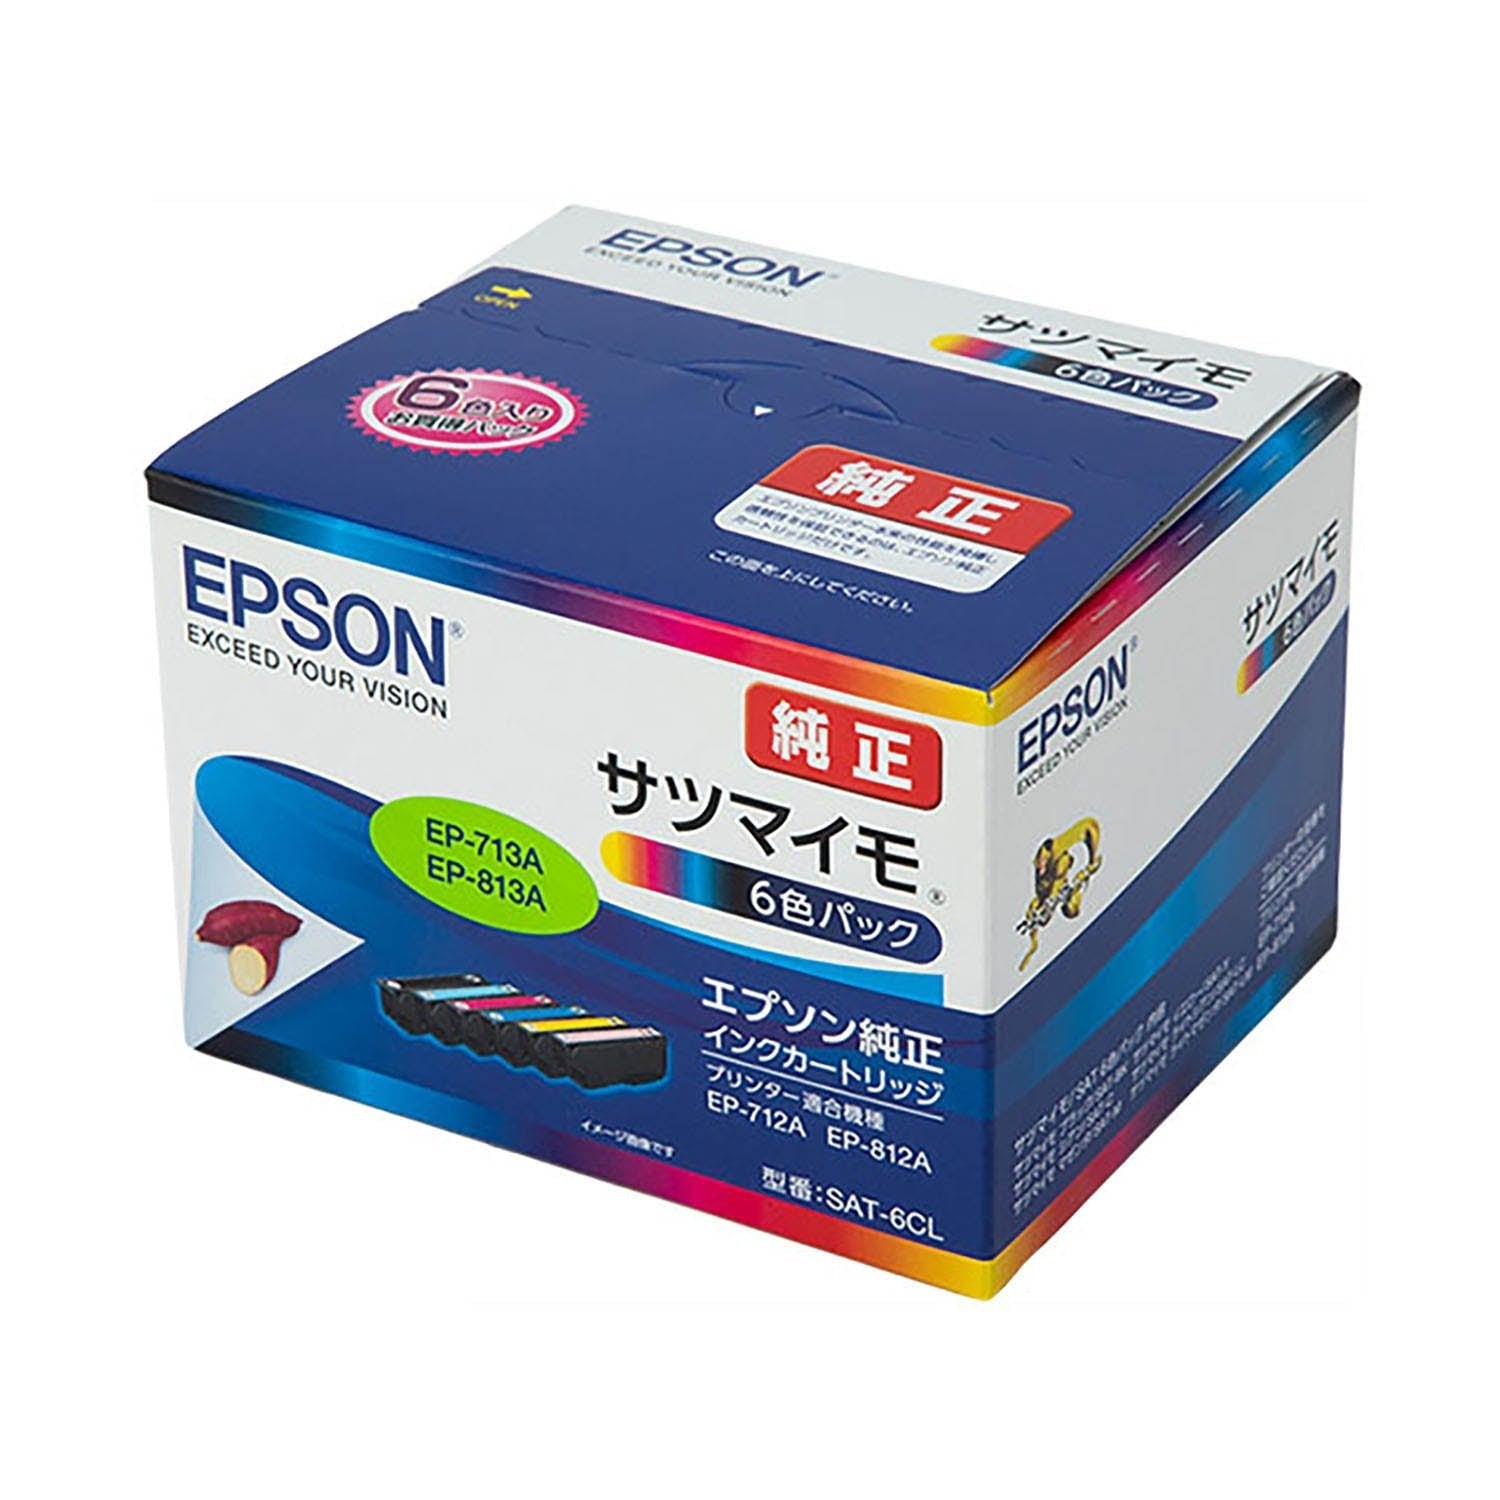 エプソン用 SAT-6CL (サツマイモ) 純正インク 6色セット